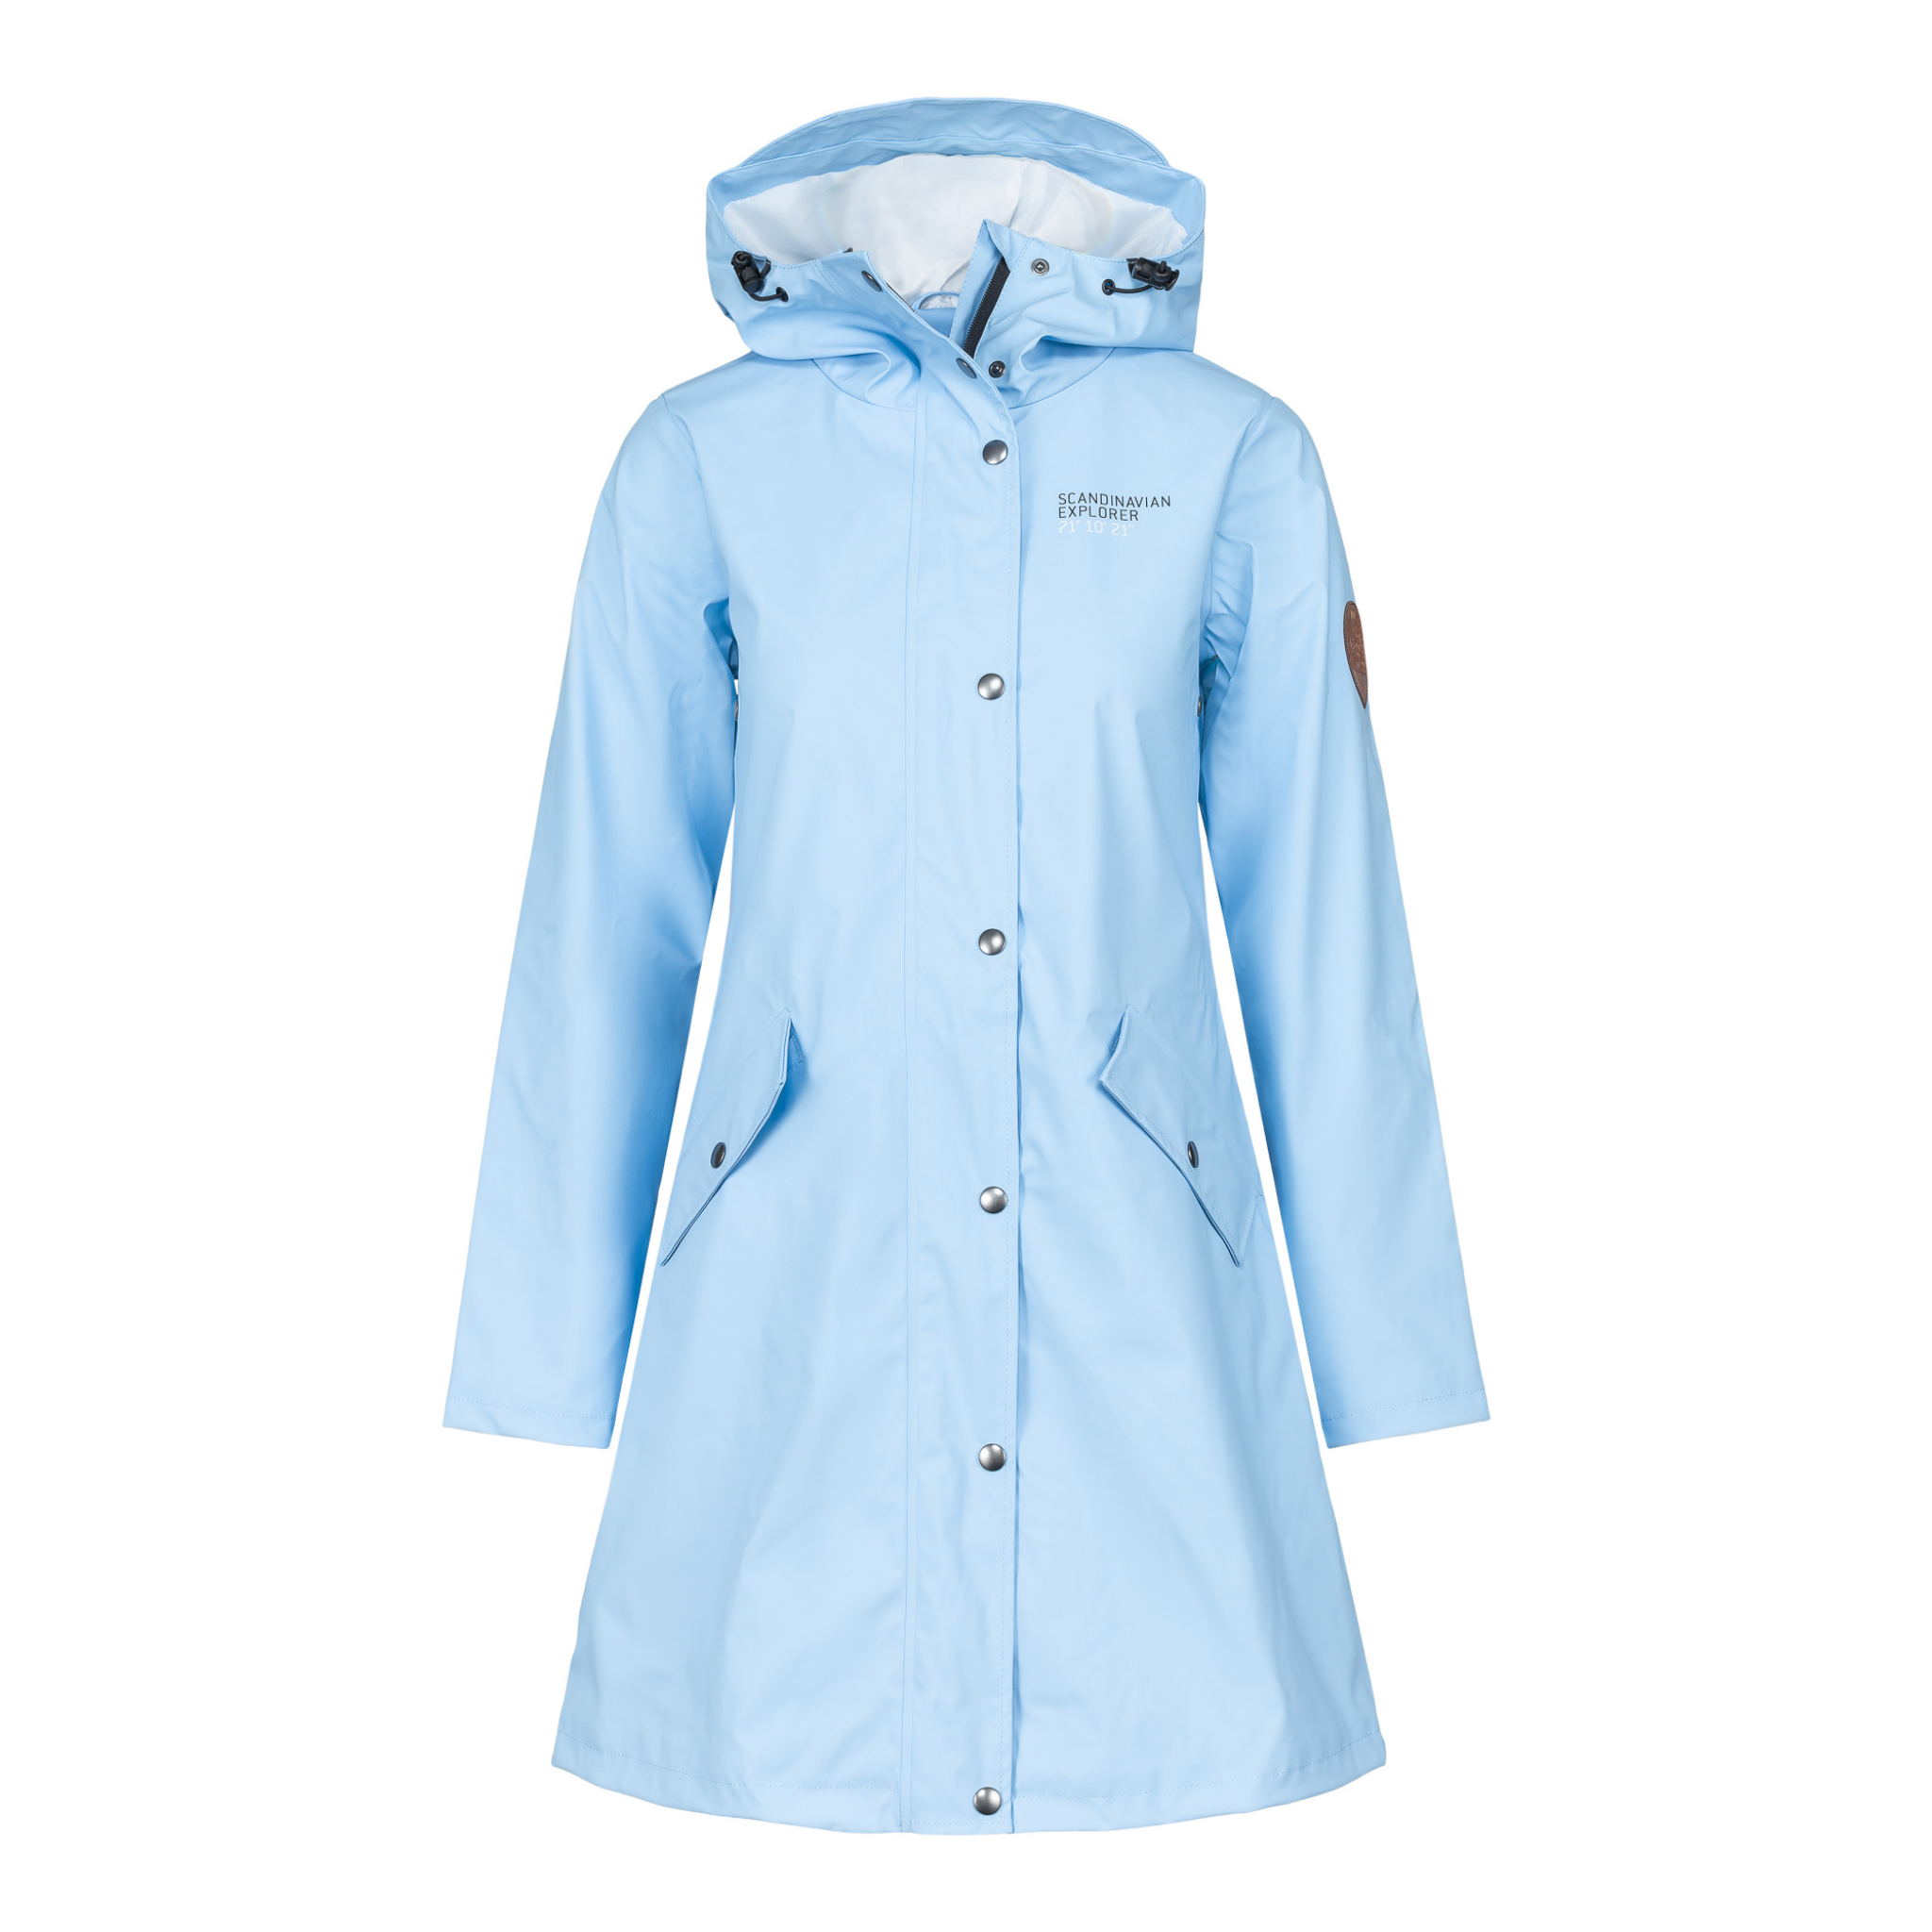 womens scandinavian raincoat light blue